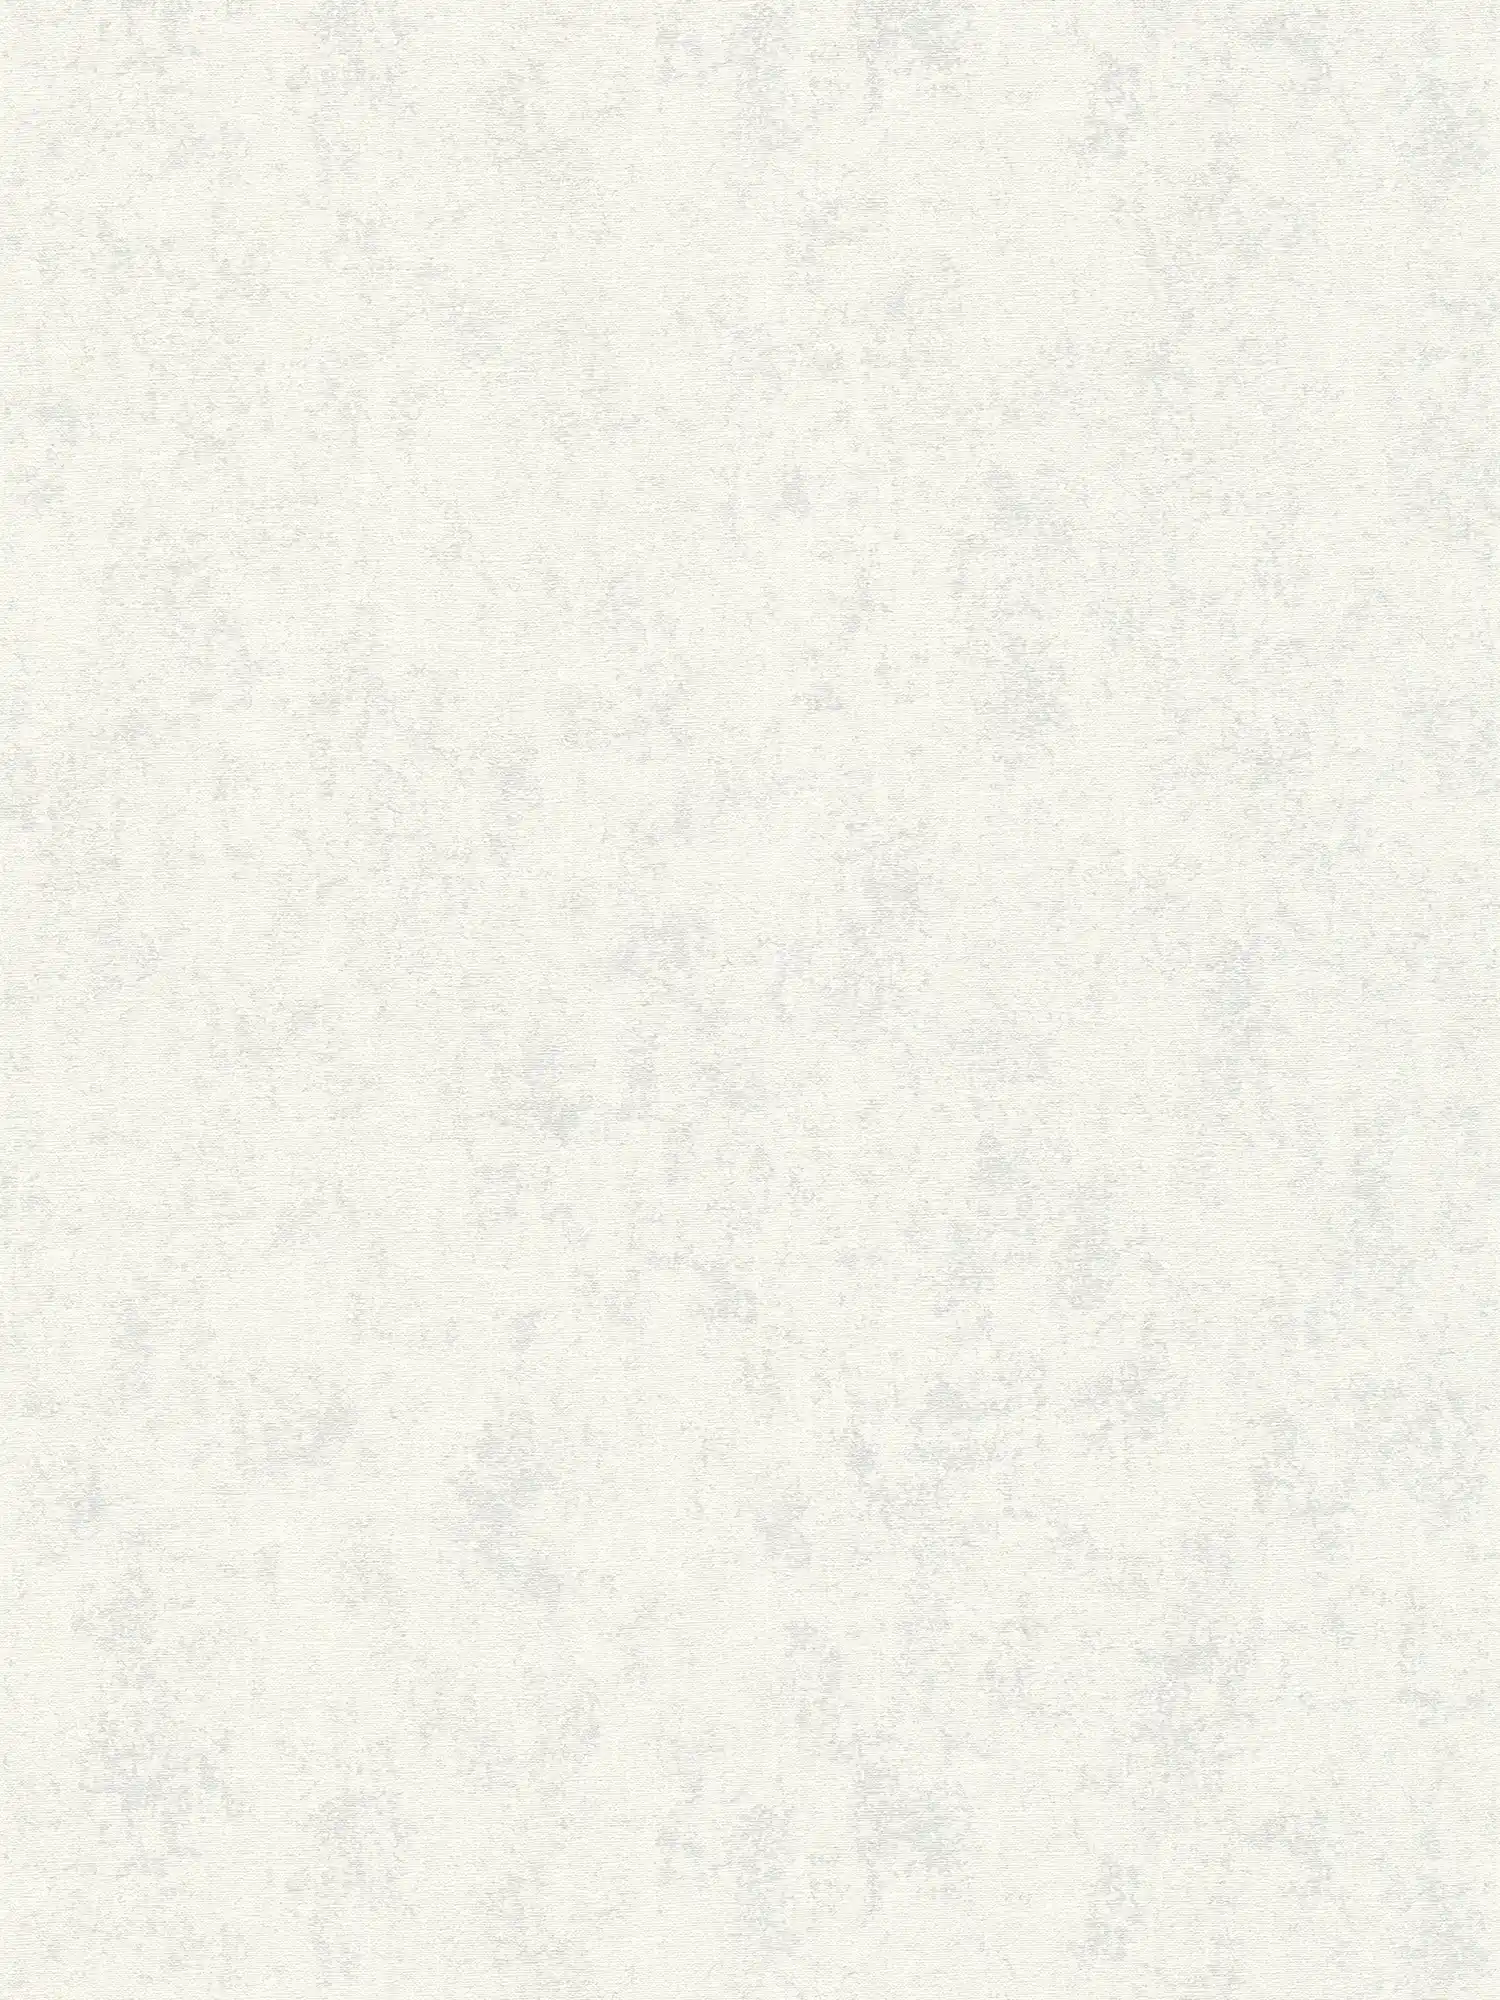 Papier peint de style scandinave uni design structuré - gris, blanc
